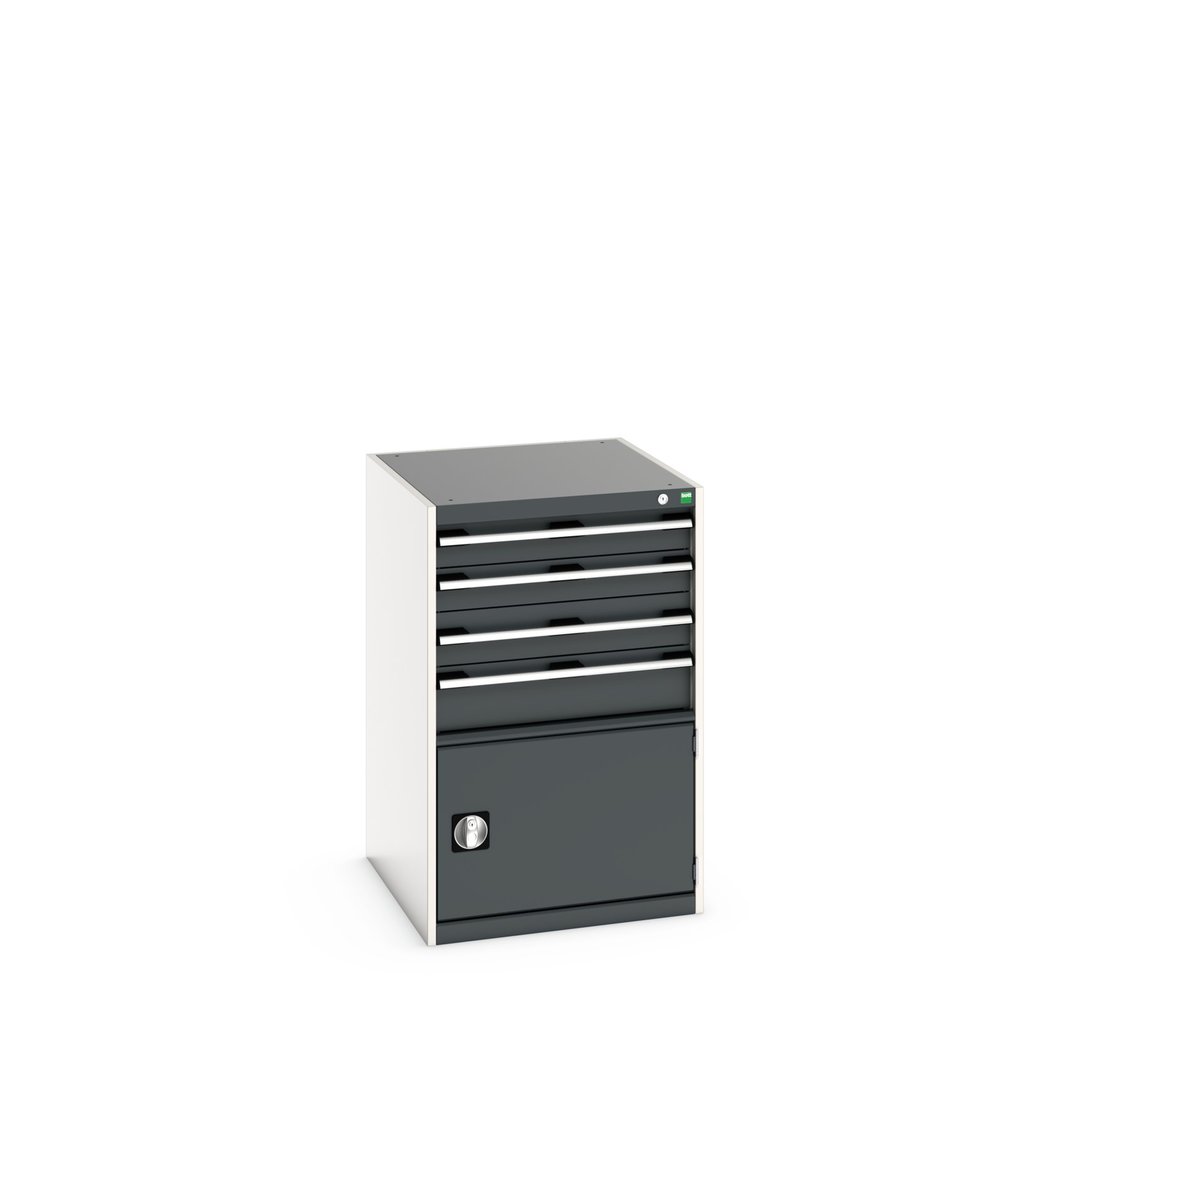 40027023. - cubio drawer-door cabinet